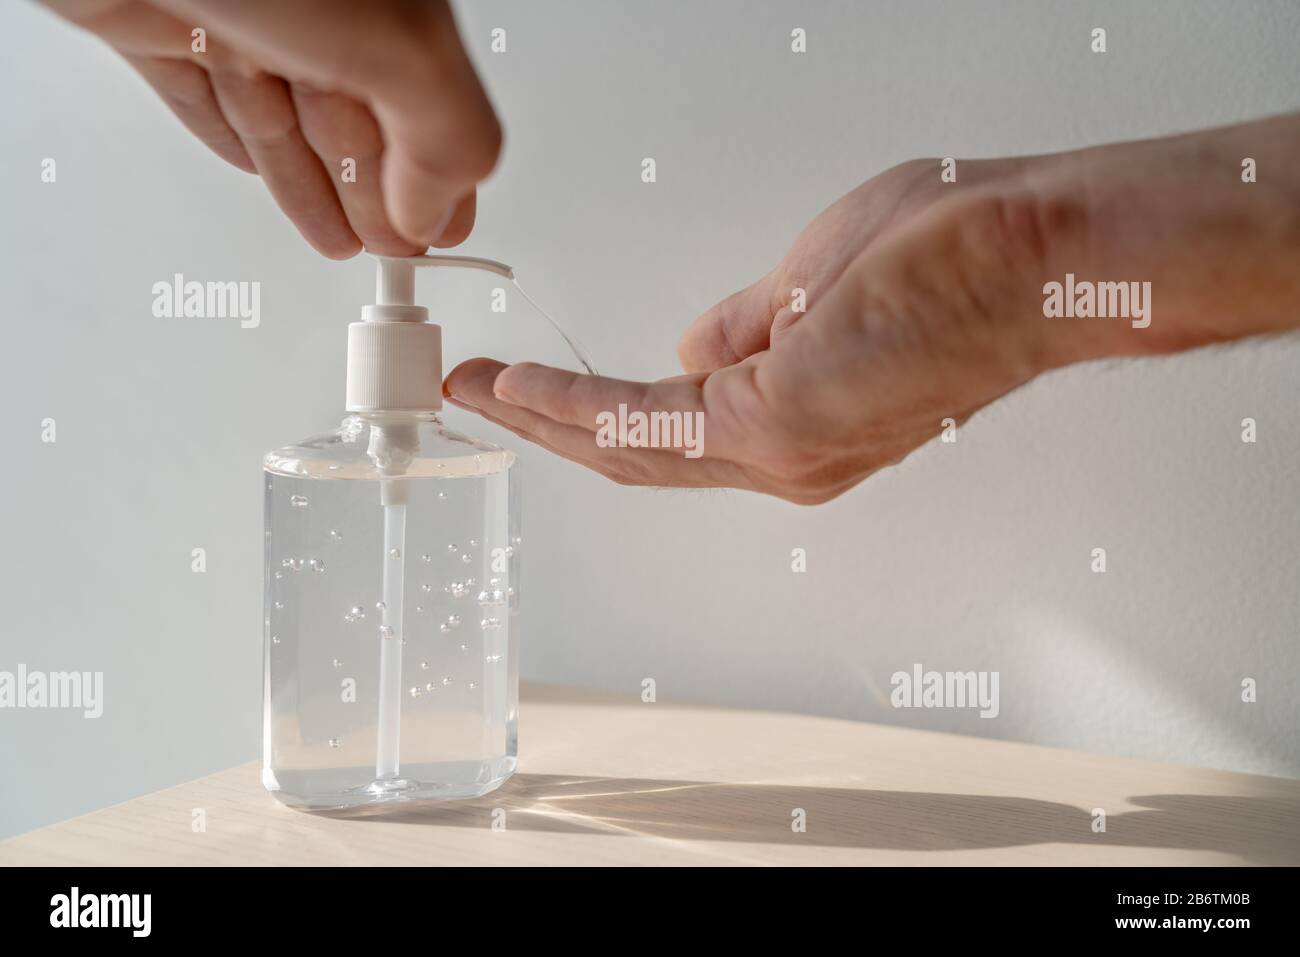 L'homme qui utilise un gel d'alcool désinfectant pour les mains frotte pour l'hygiène des mains à la maison ou dans l'espace public, clinique hospitalière pour la prévention préventive de l'épidémie de propagation du coronavirus. Banque D'Images